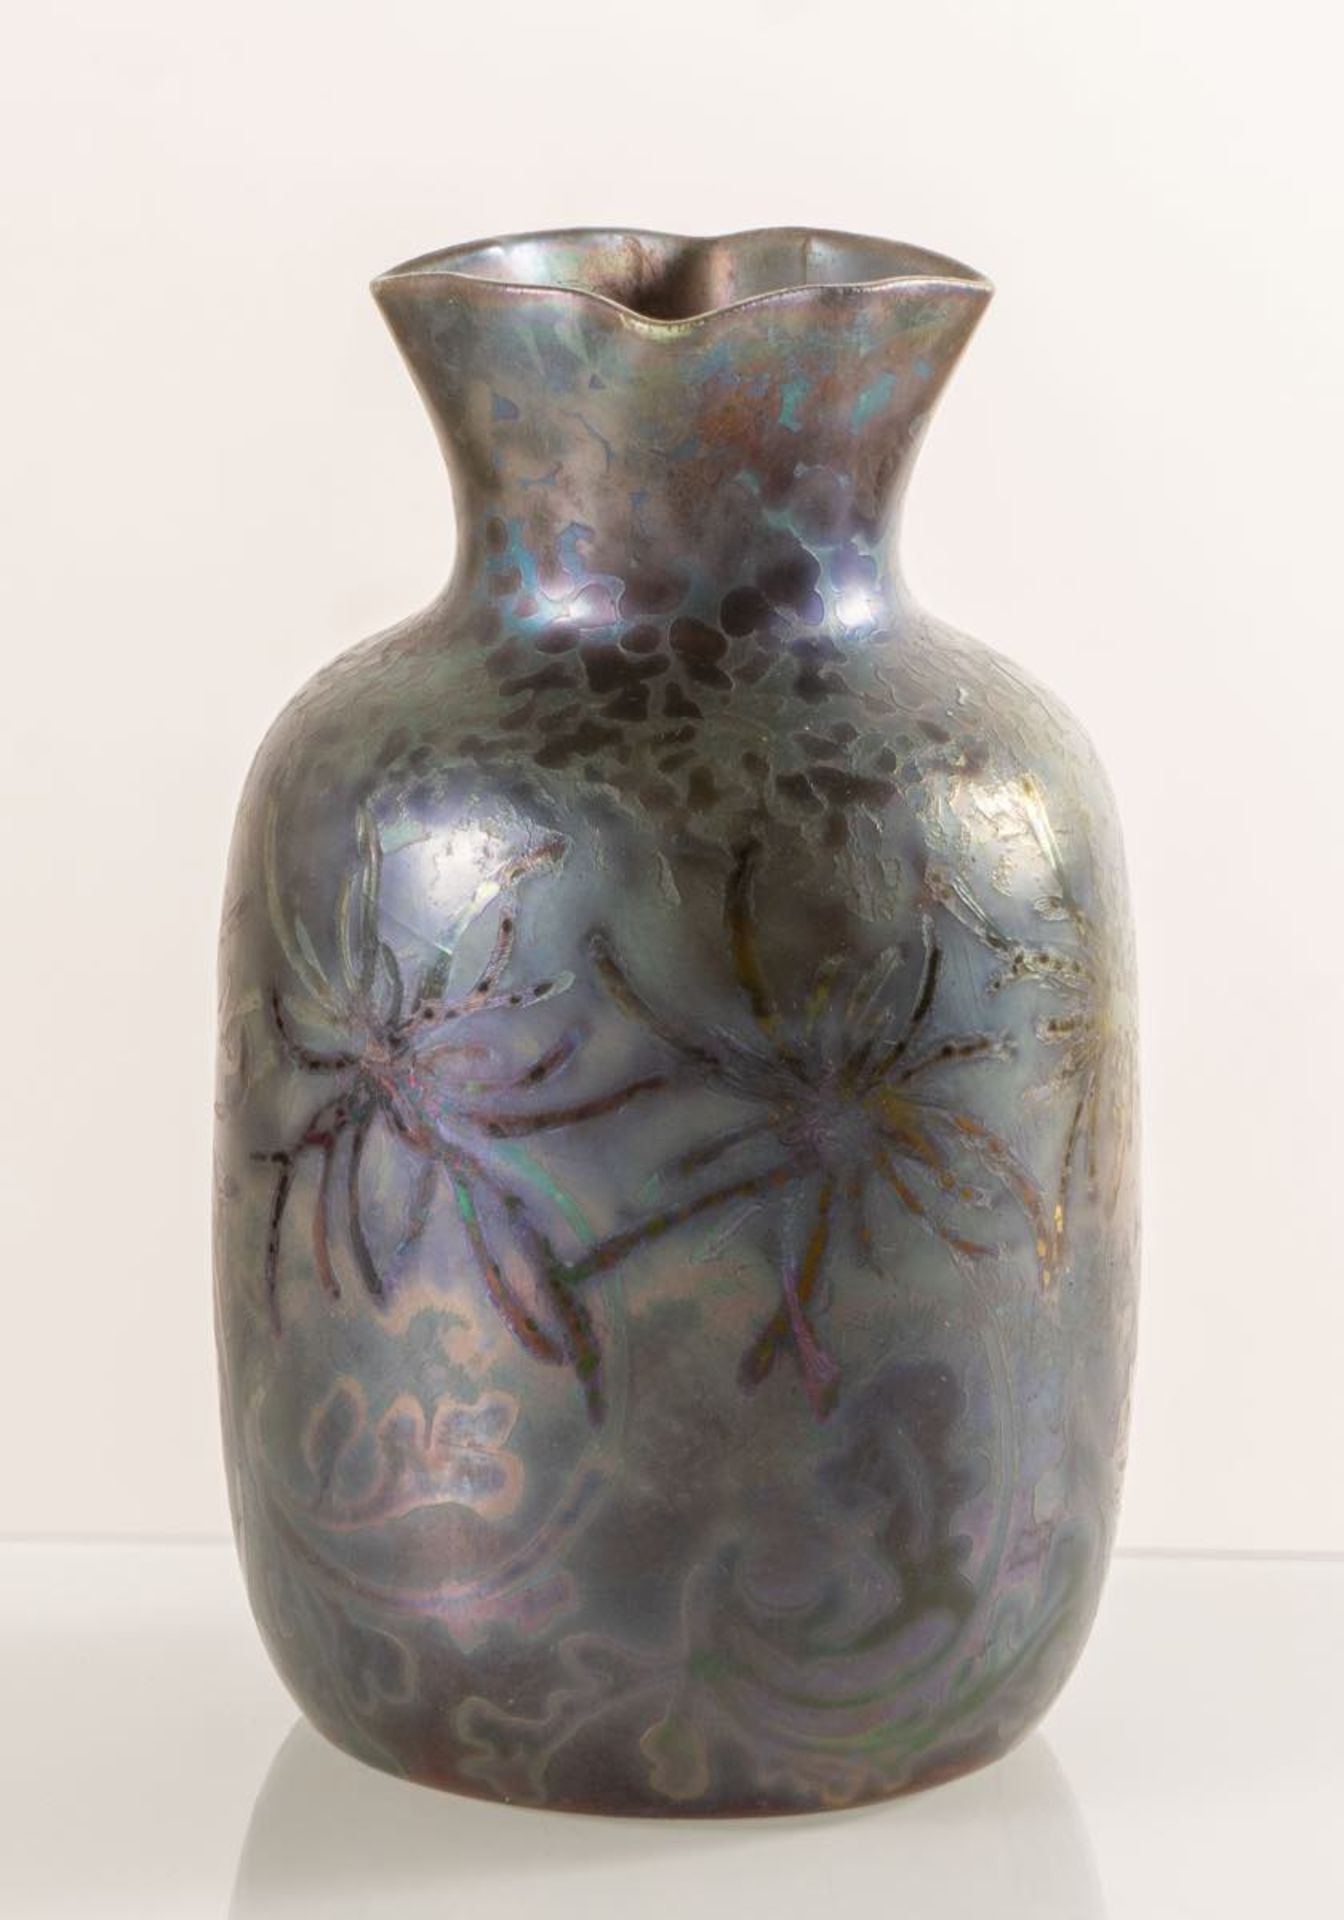 Clément Massier, Piccolo vaso in ceramica, 1890 - 1910.Corpo a sezione globulare con imboccatura - Bild 2 aus 3